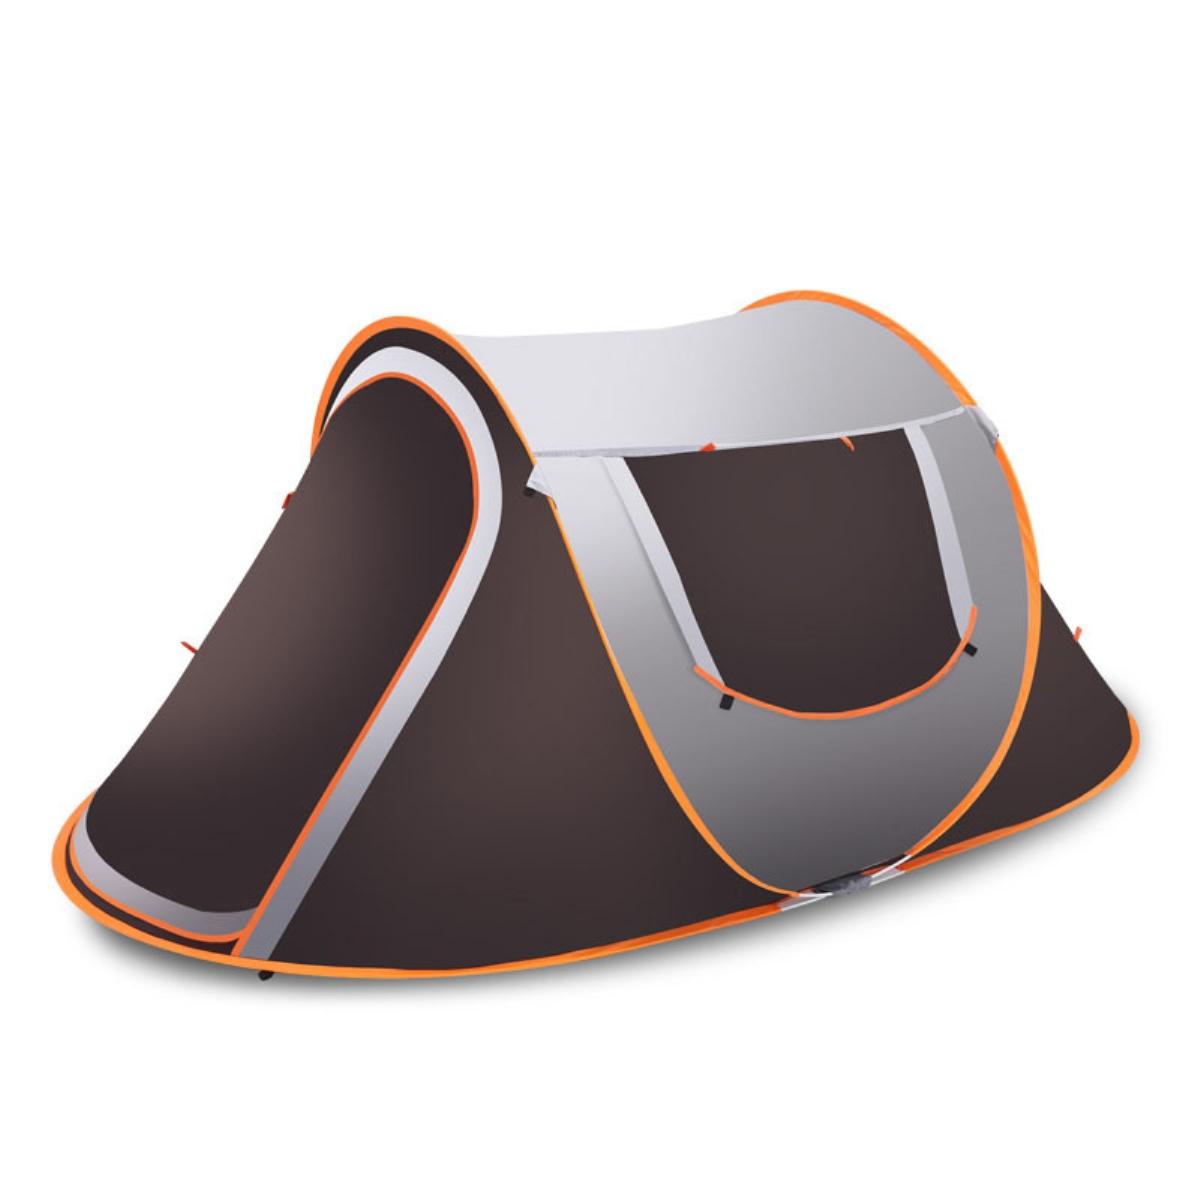 Pop-up tent voor 3-4 personen, waterdicht, met zonnescherm en regenbescherming, ideaal voor kamperen en wandelen.